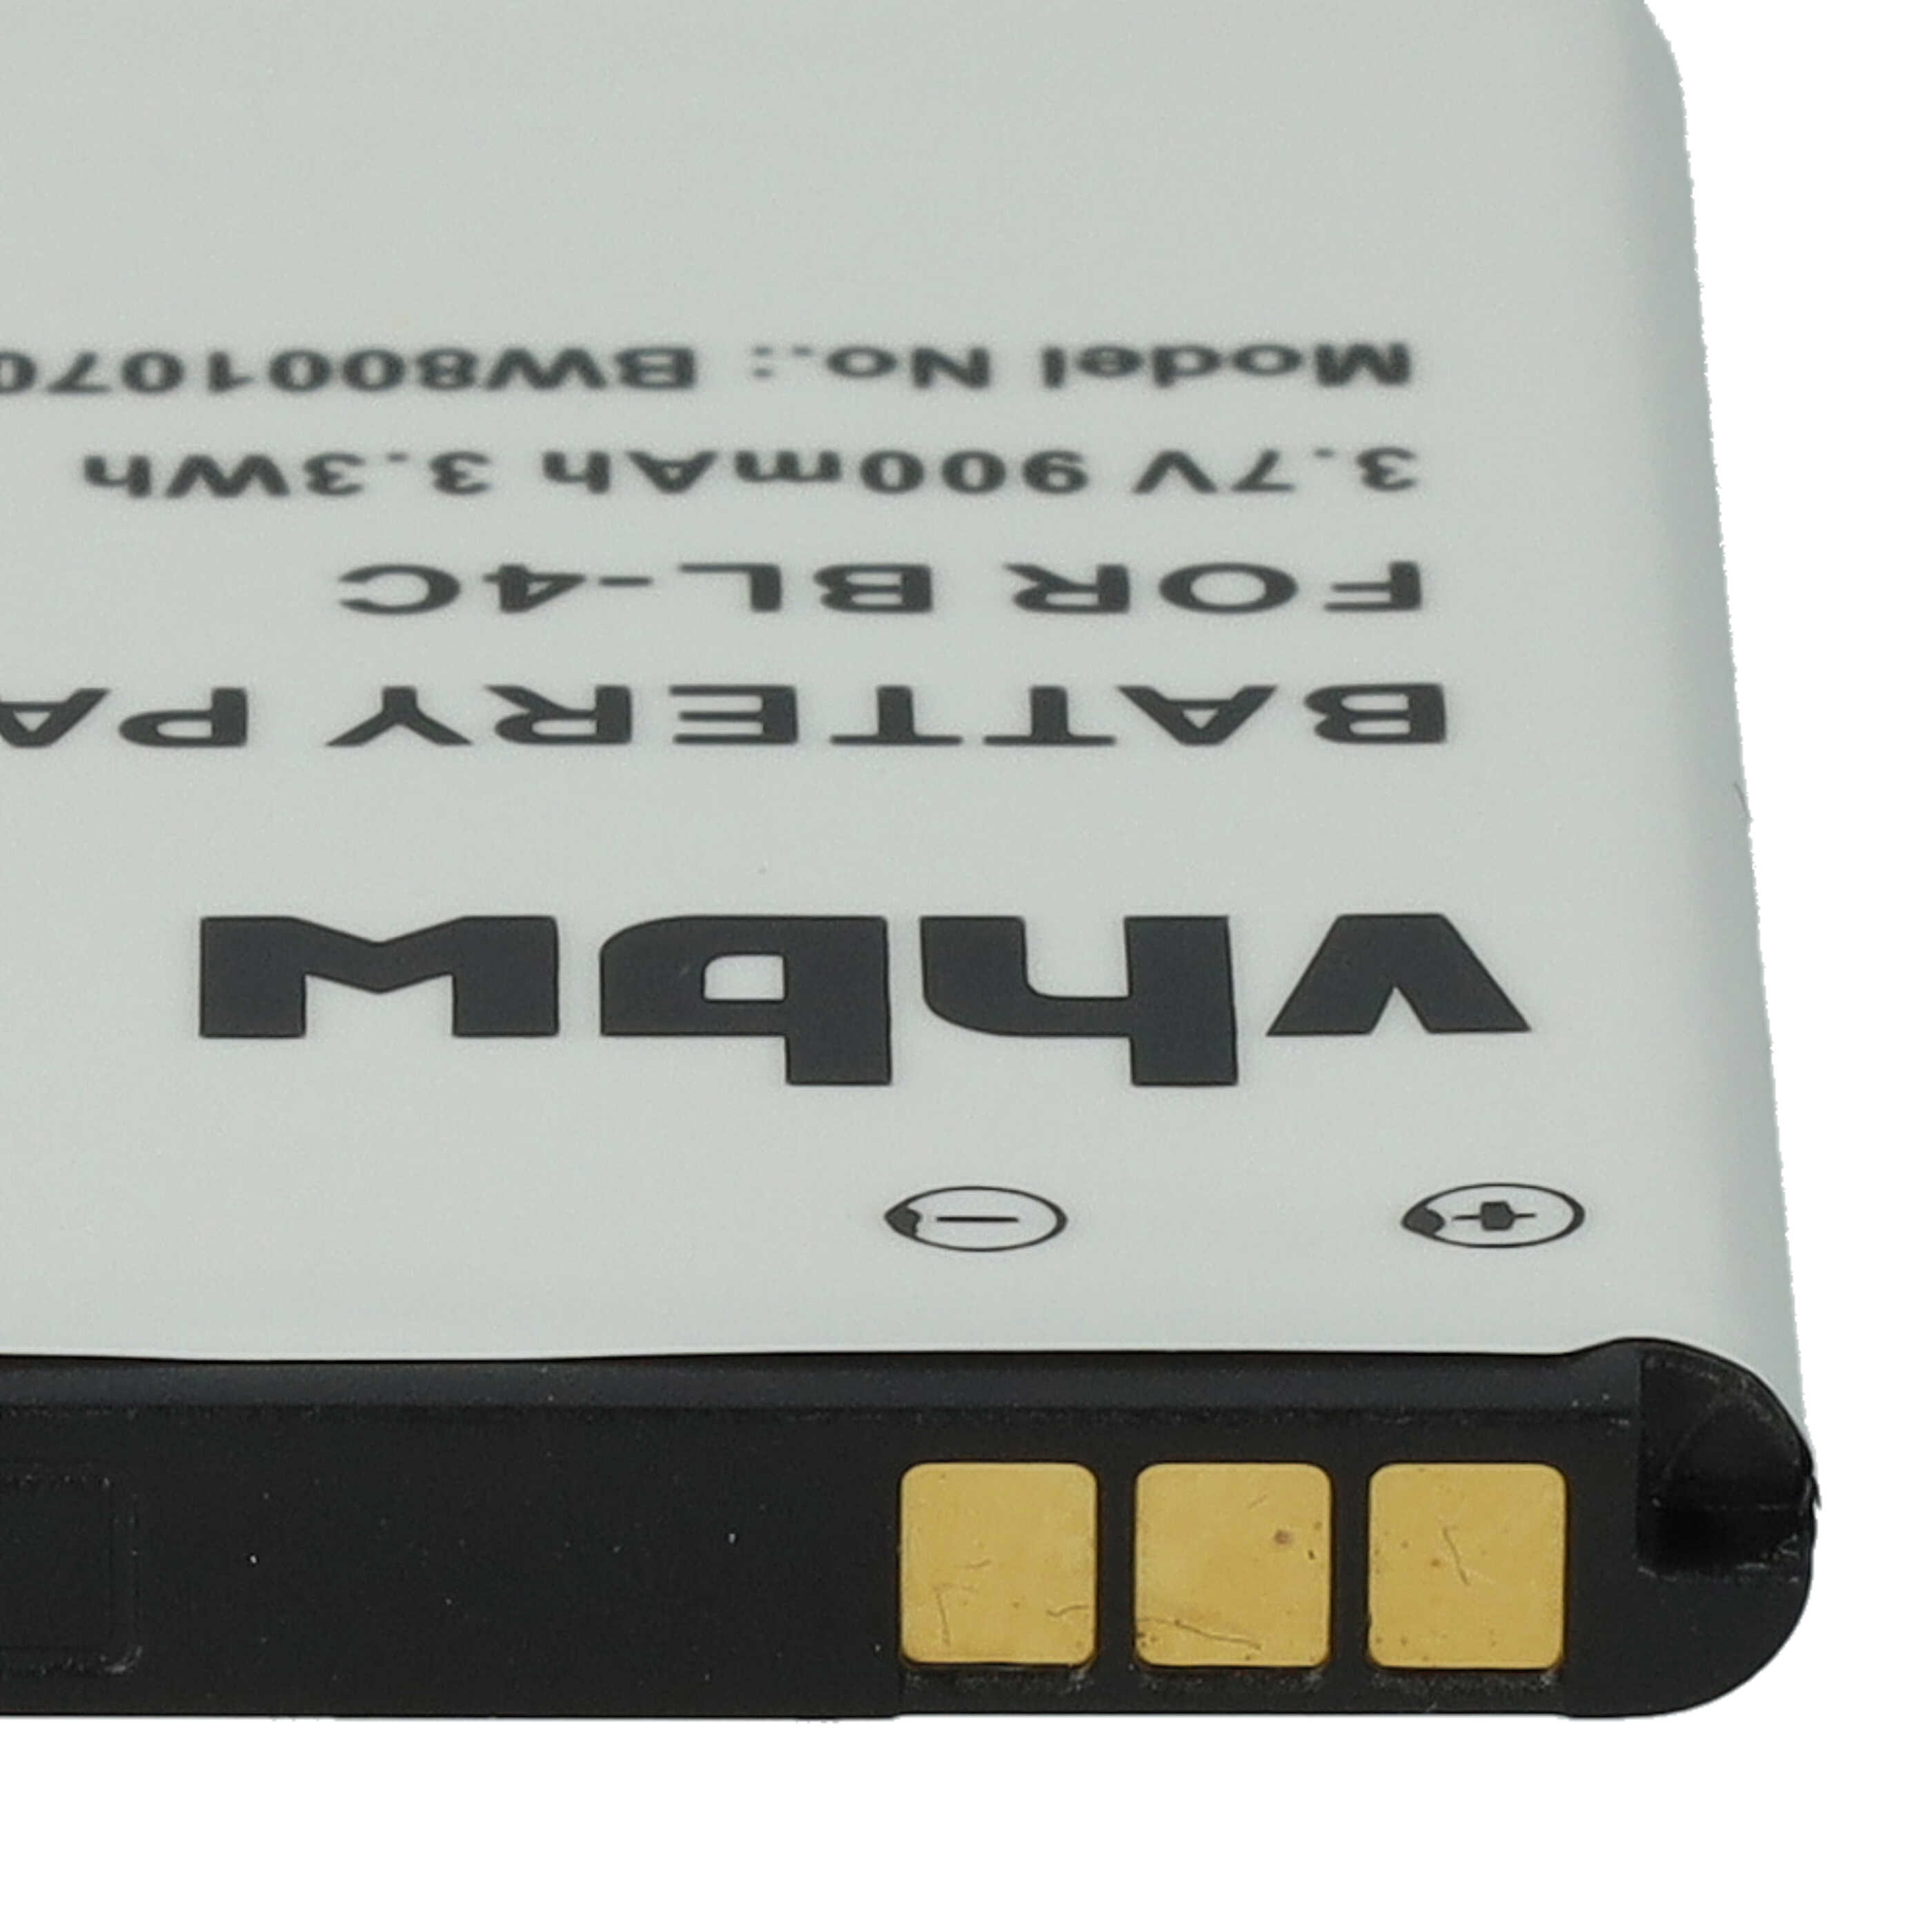 Batterie remplace Emporia AK-C140 pour téléphone portable - 900mAh, 3,7V, Li-ion